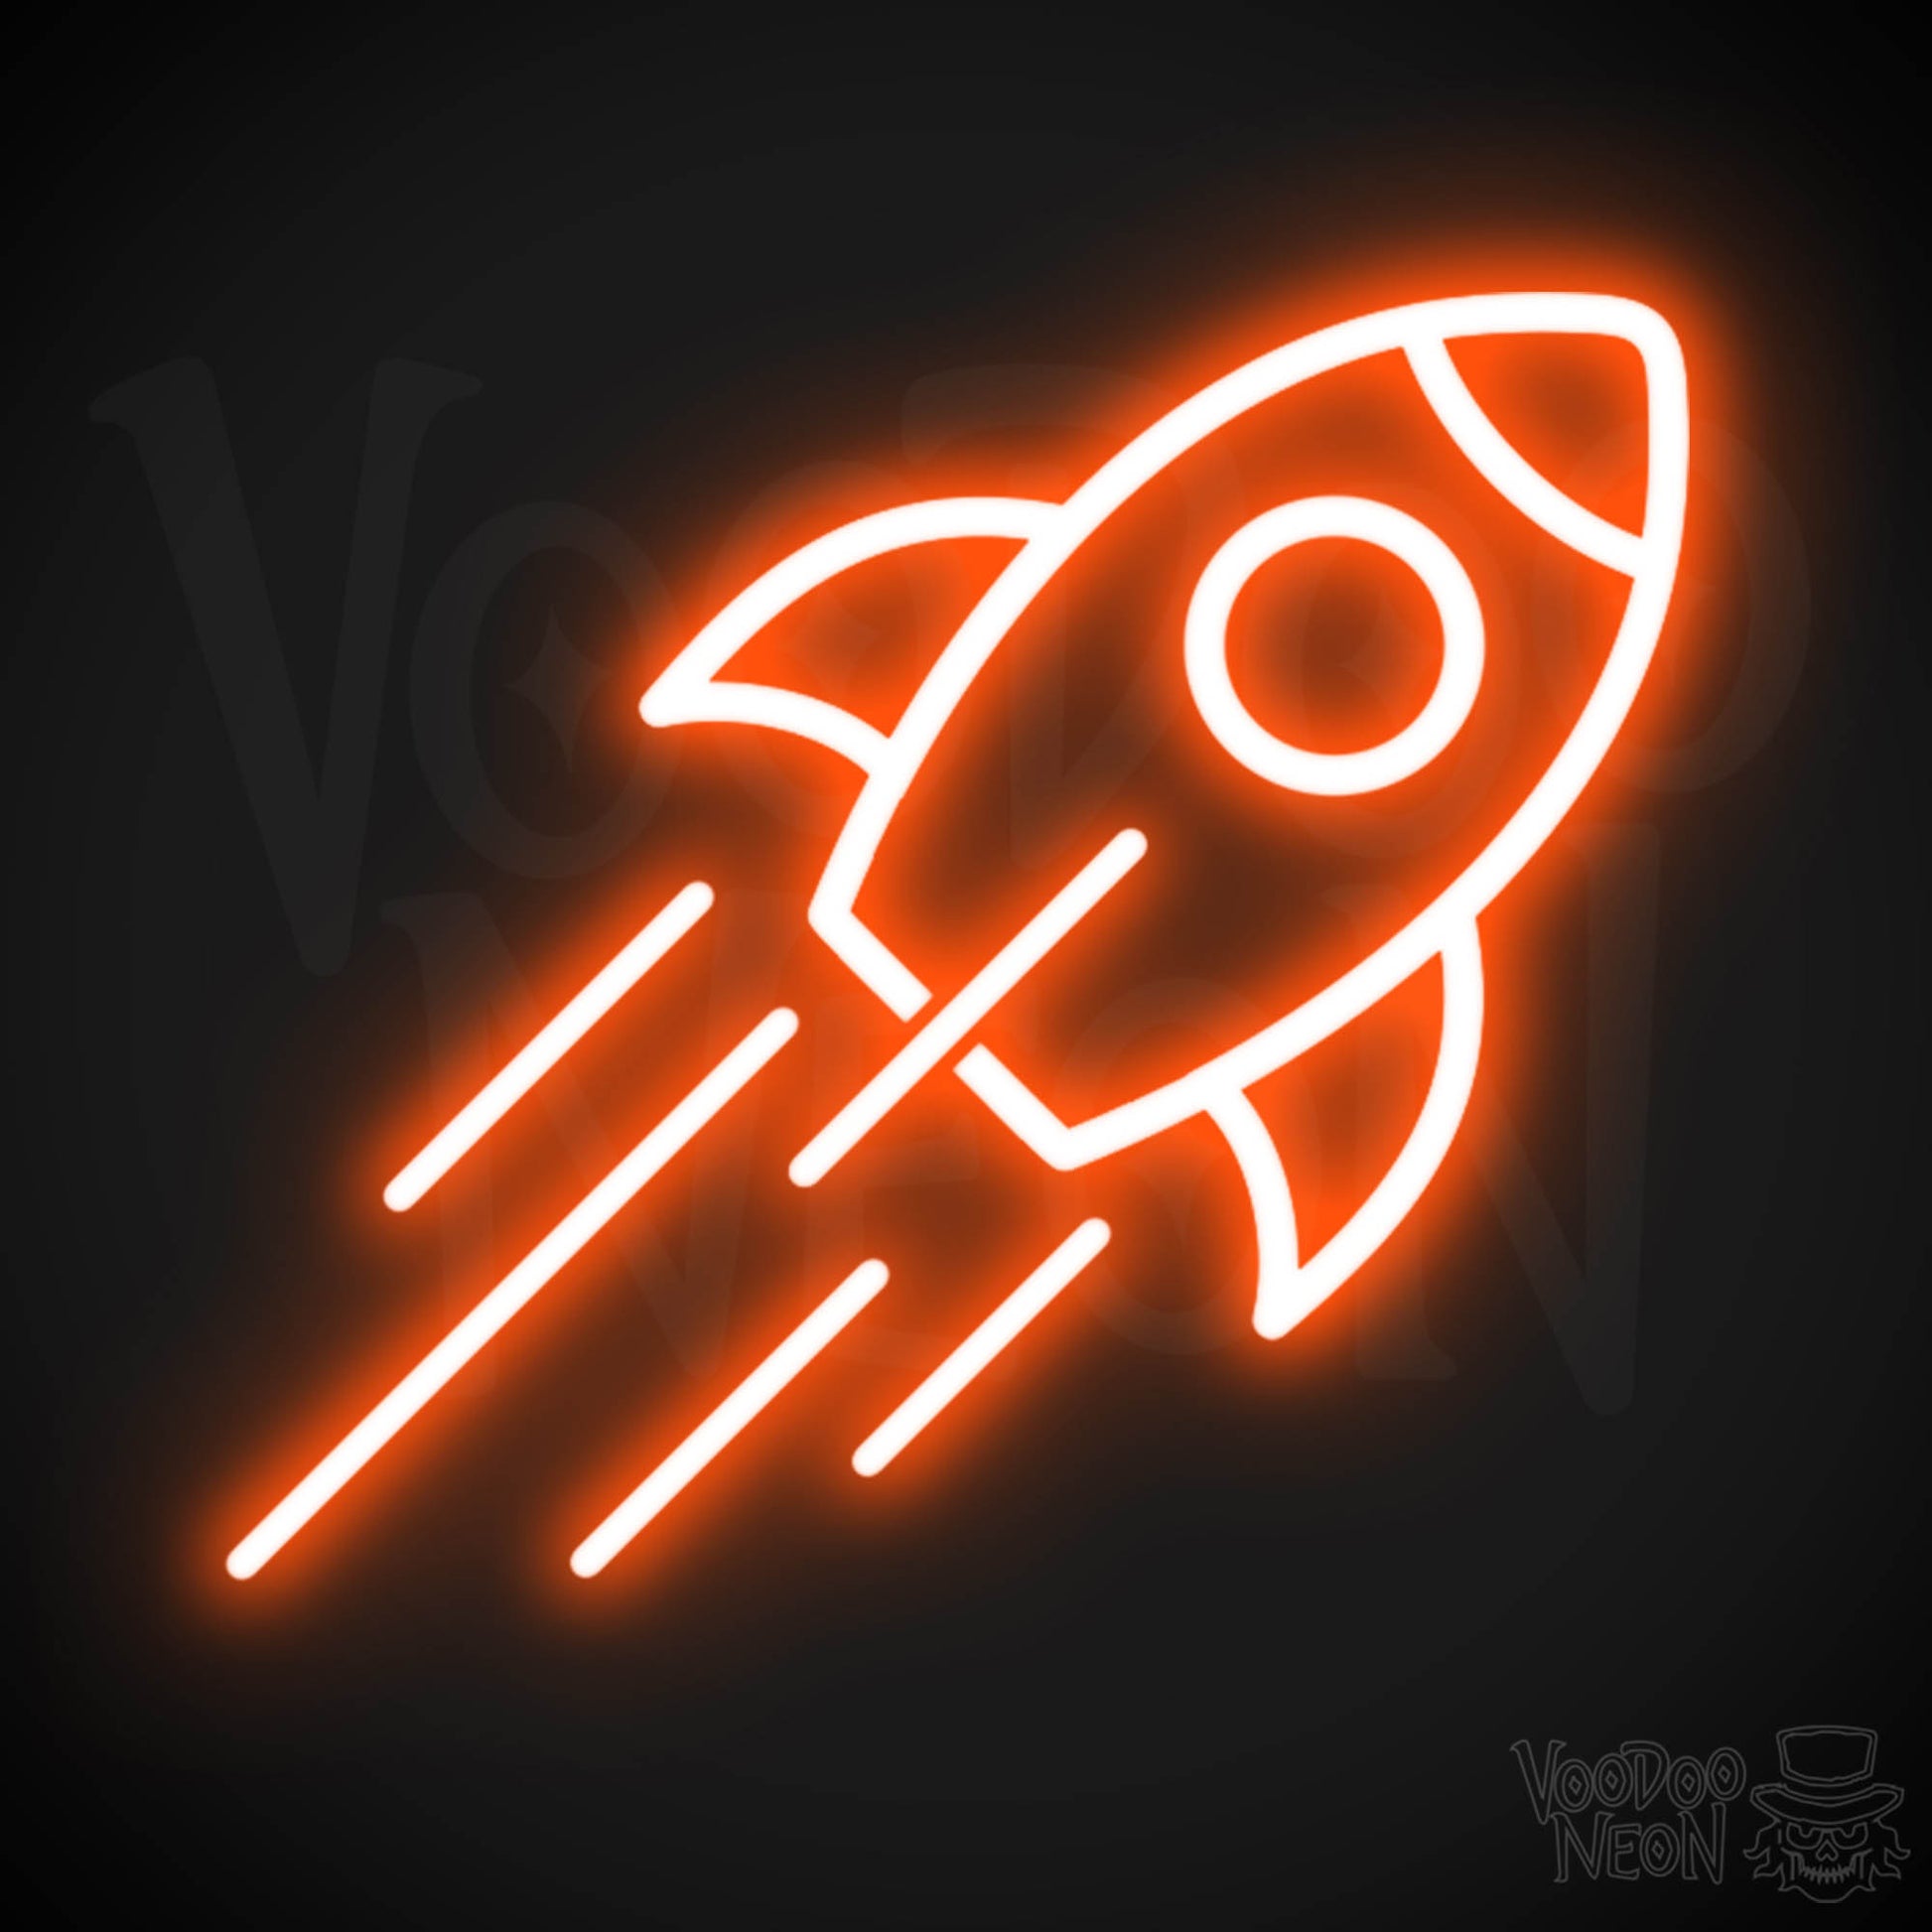 Neon Rocket - Rocket Neon Sign - Rocket Ship Neon Wall Art - Color Orange